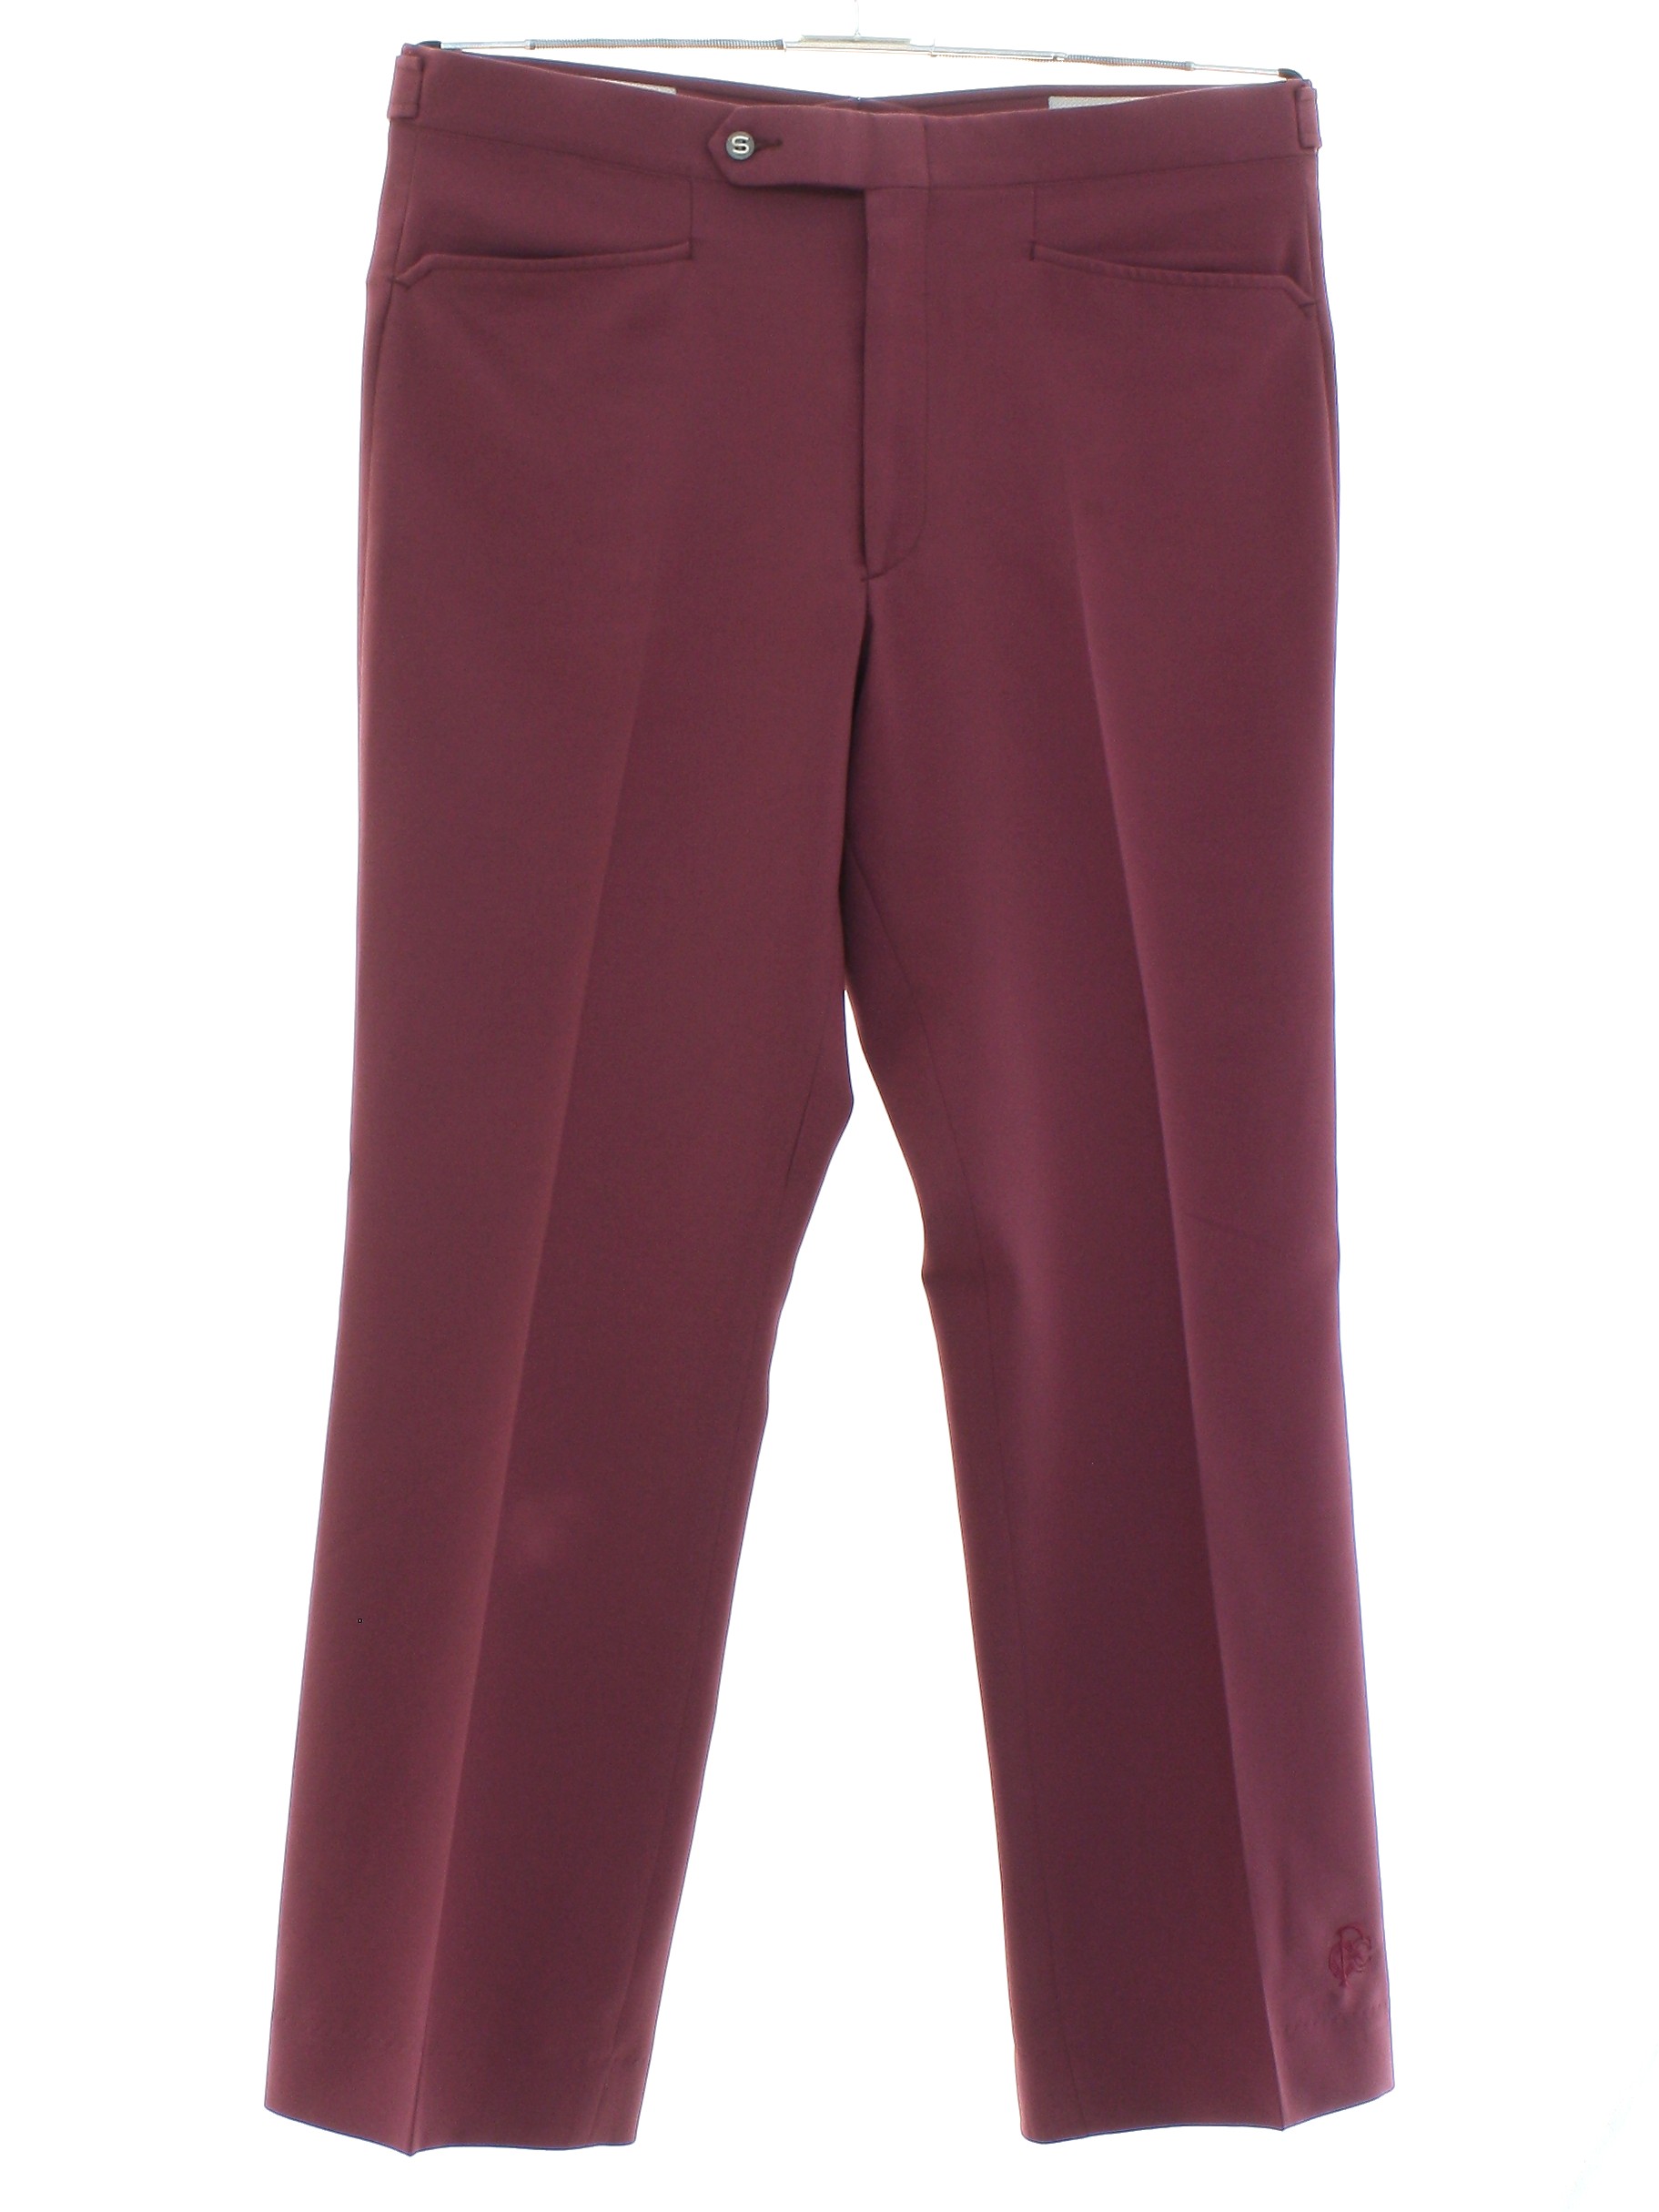 Seventies Vintage Pants: 70s -Sansabelt- Mens violet red solid colored ...